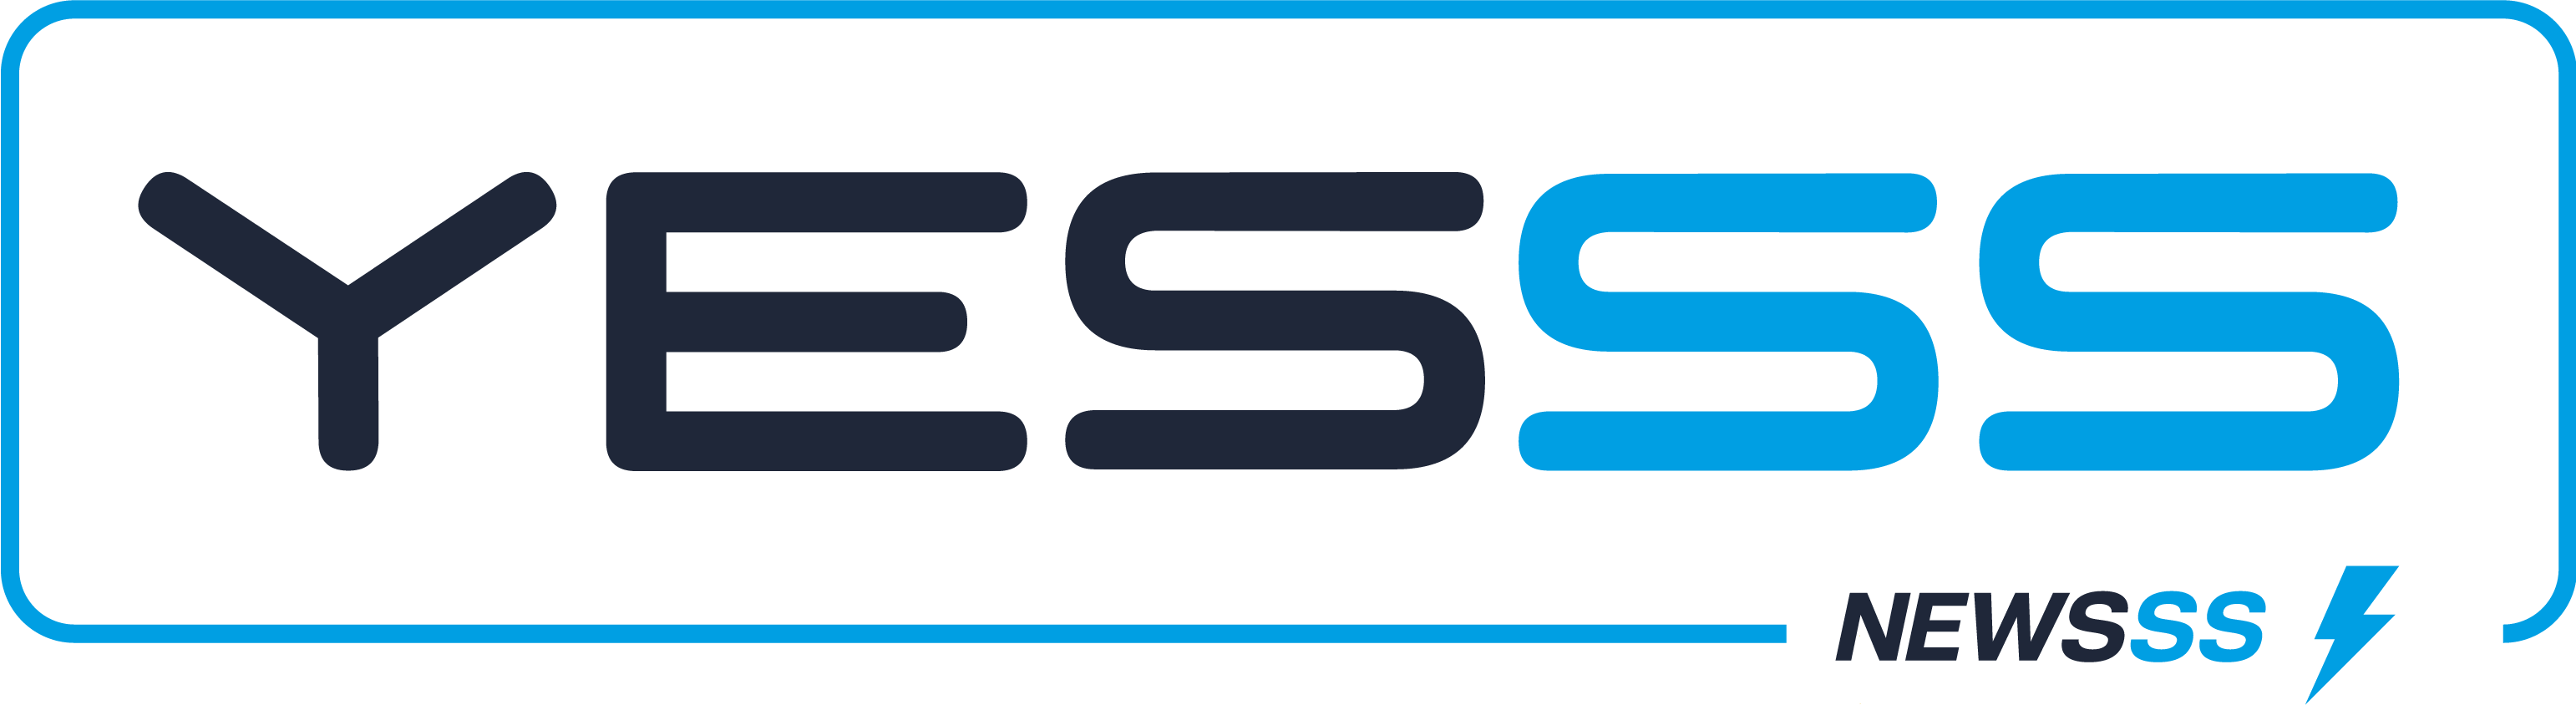 logo yesss